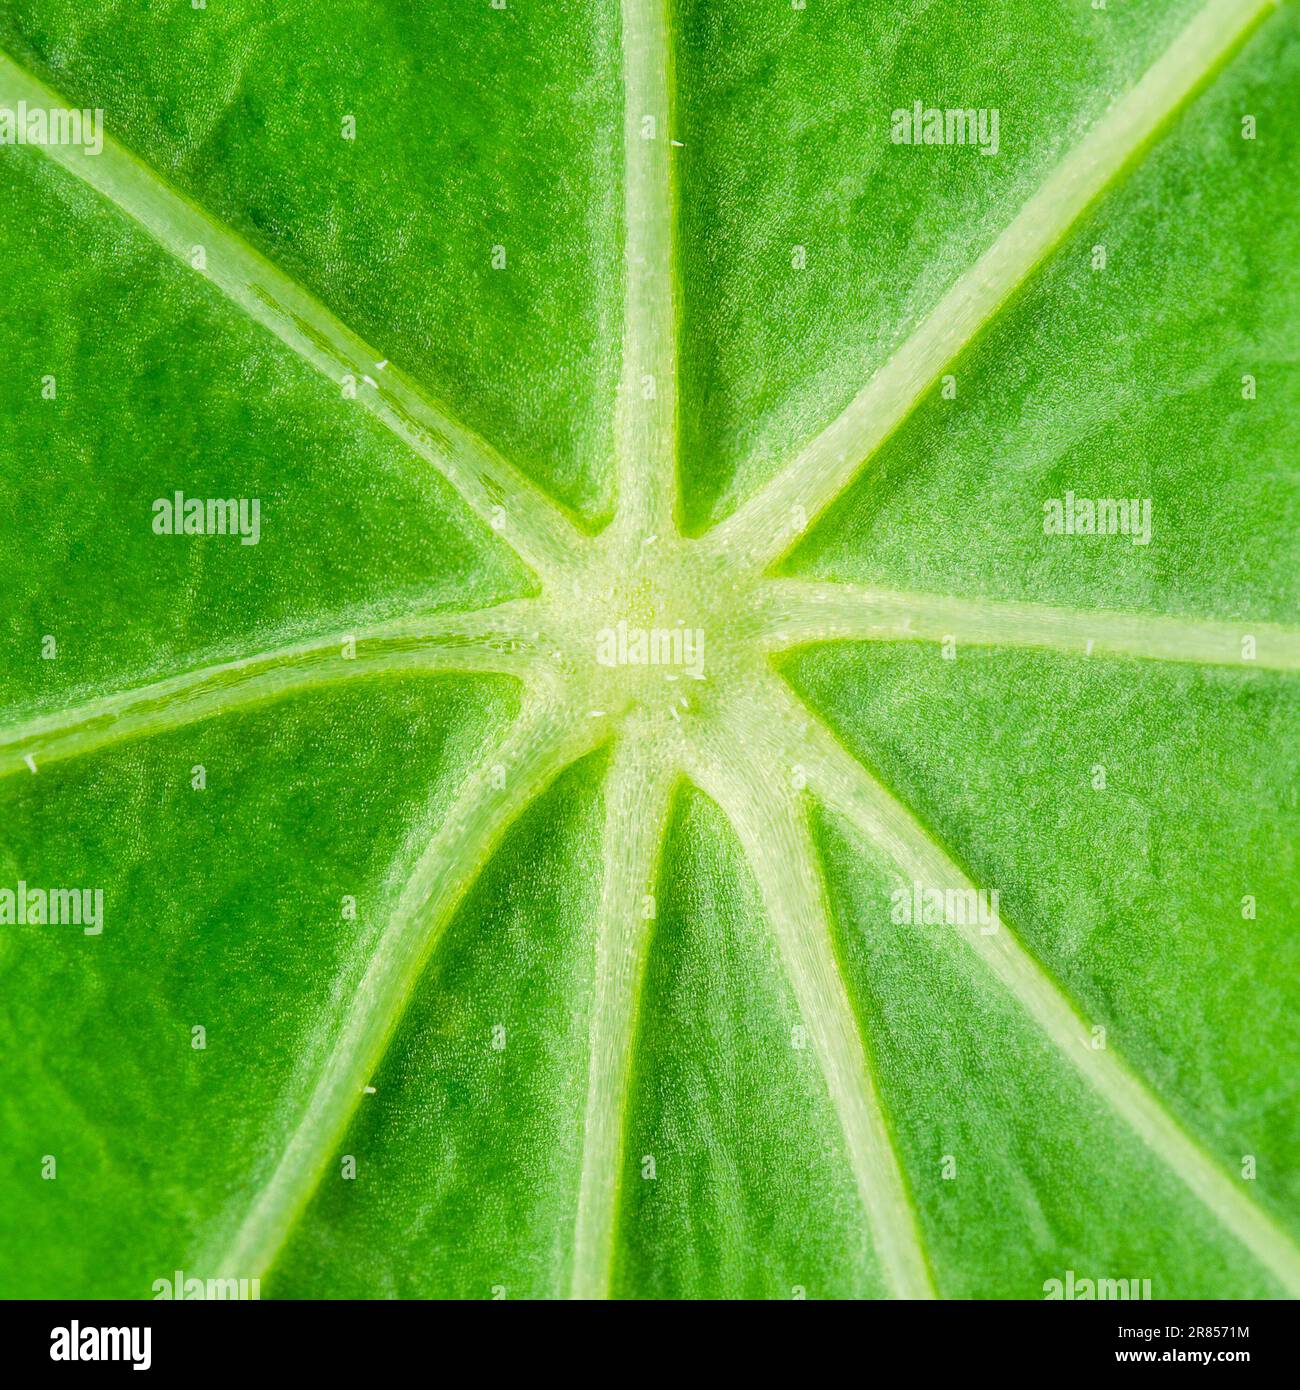 Mitte des Gartenblattes mit intensiver Chlorophyllgrün-Farbe, sternförmig ausbreitenden dicken Blattwänden, Blattzellen und Poren. Stockfoto